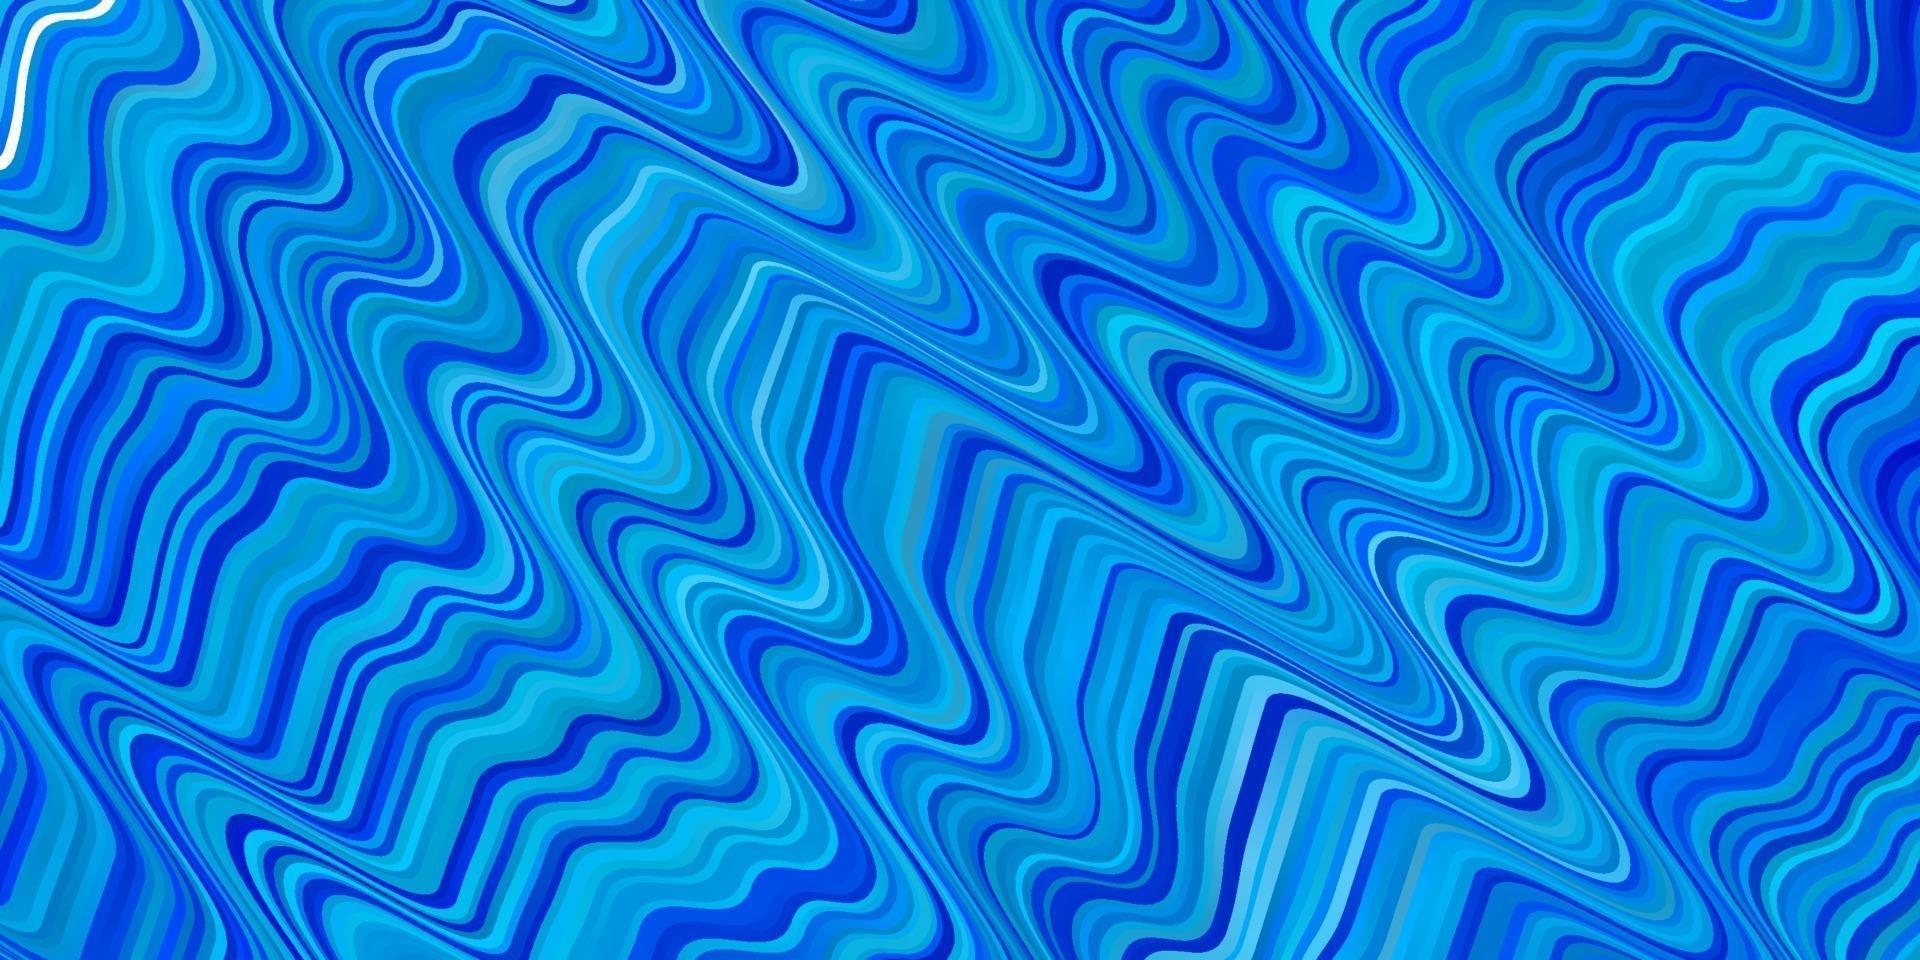 textura vector azul claro com curvas.